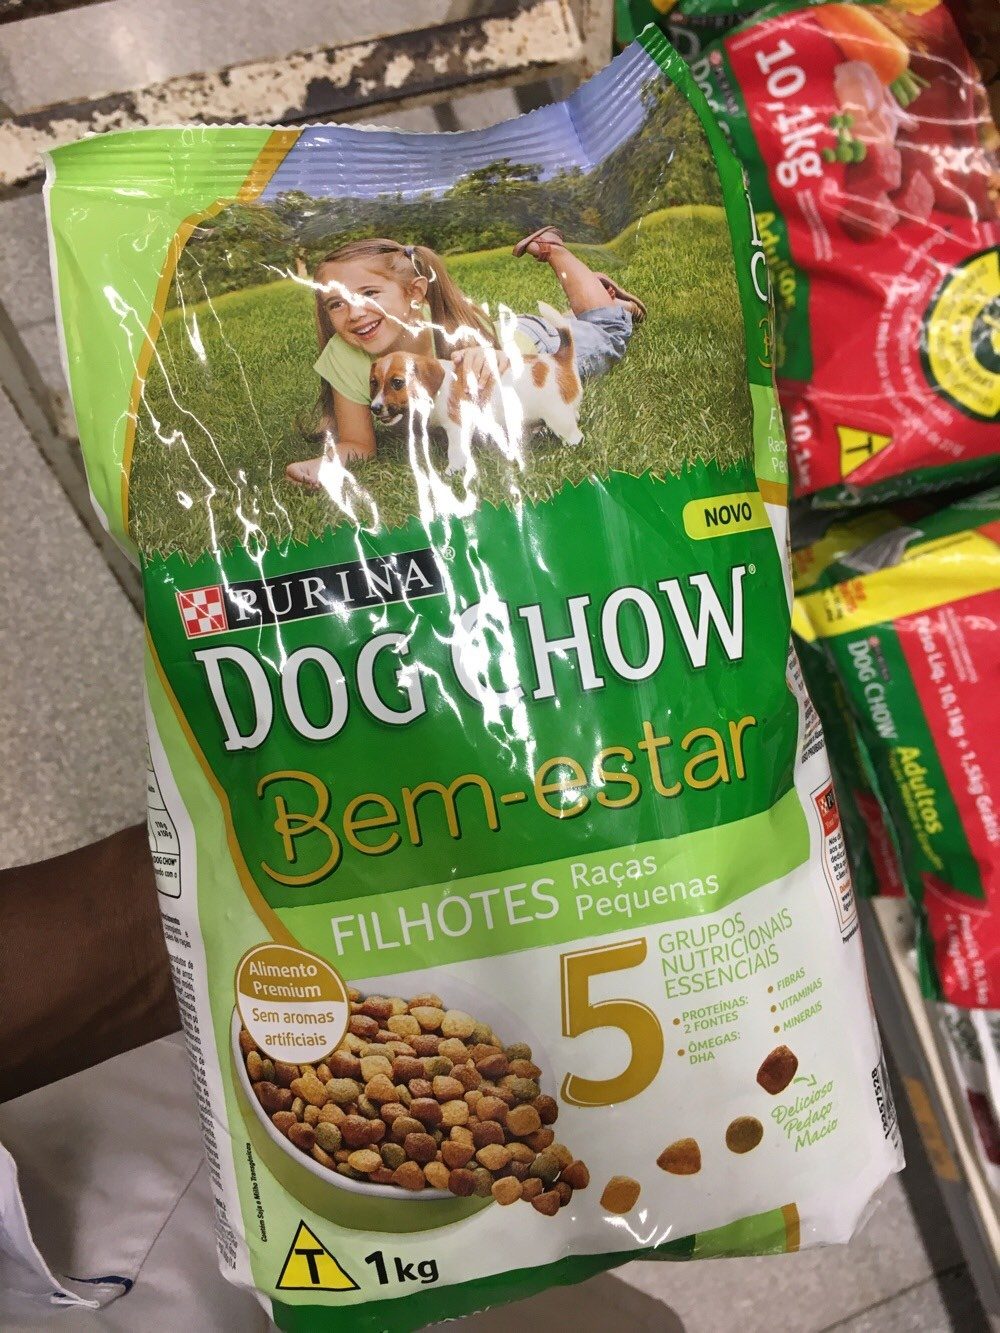 Alimento cão Doguitos chow bem estar 1kg filhotes raças pequenas - Product - pt